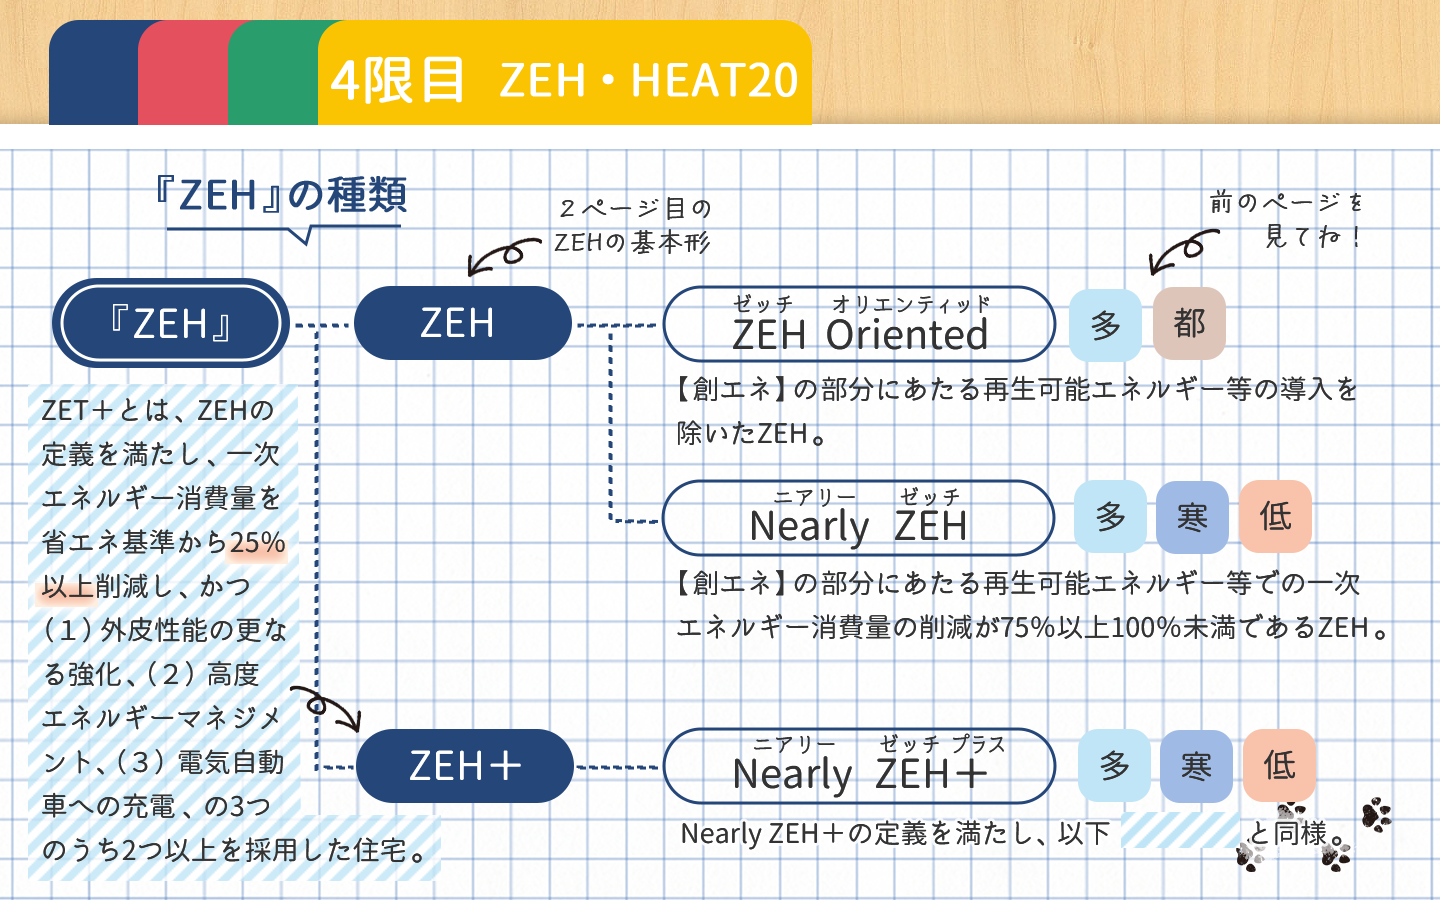 ZEHの種類、『ZEH』、ZEH、ZEH Oriented、Nearly ZEH、ZEH+、Nearly ZEH+